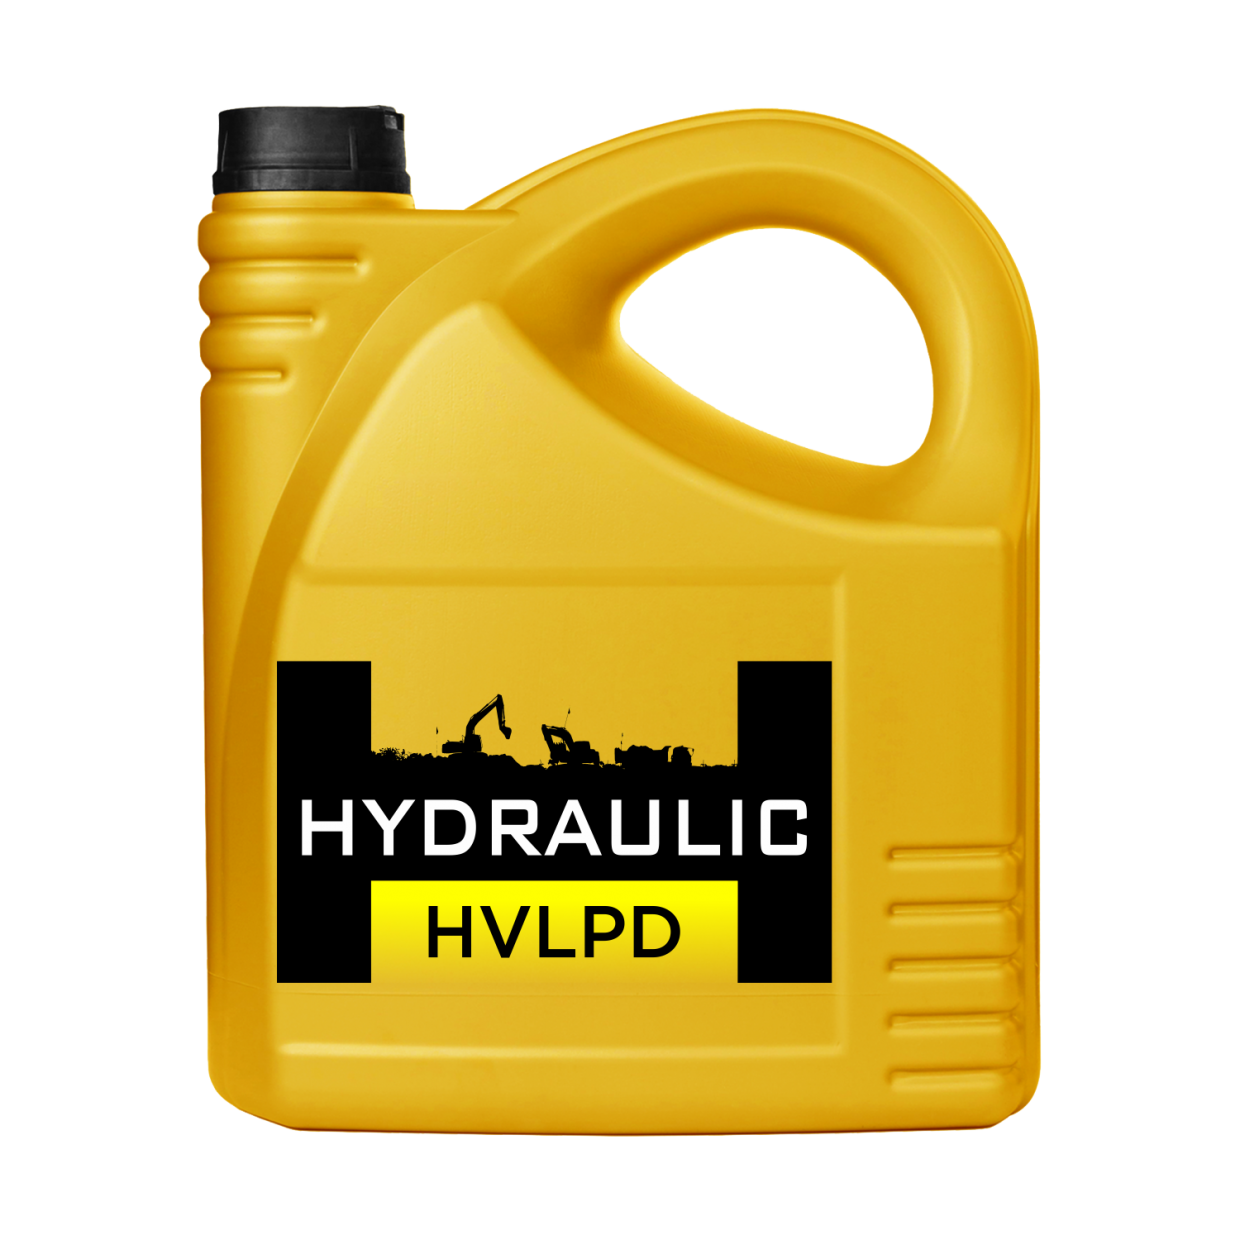 Гидравлическое масло 8. Масло Hydraulic 46. HLP 46 масло гидравлическое. Масло гидравлическое HVLP 46.